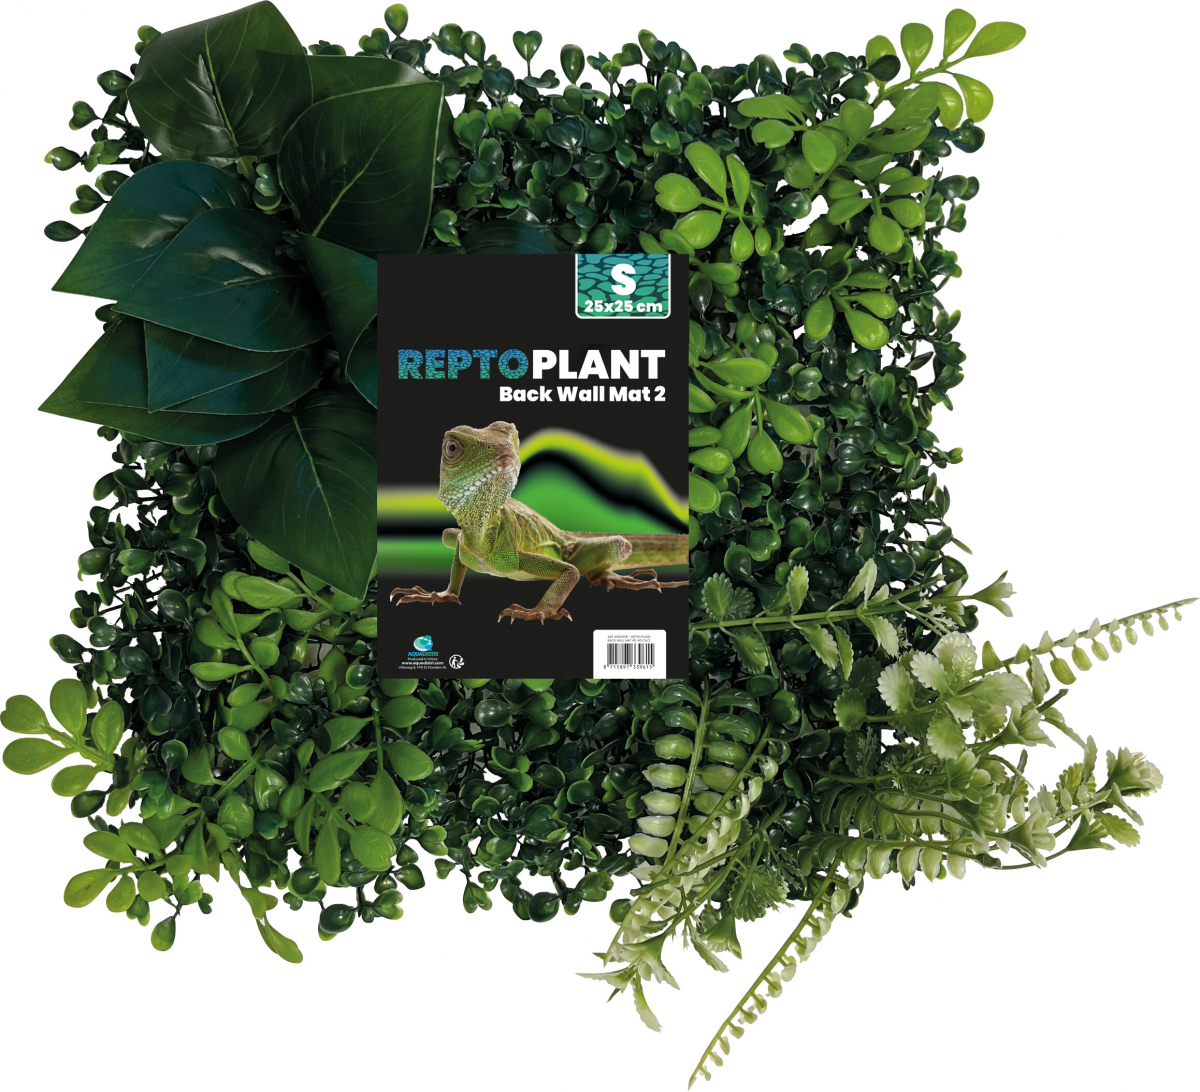 Mur végétal 25x25cm Repto Plant - 3 modèles